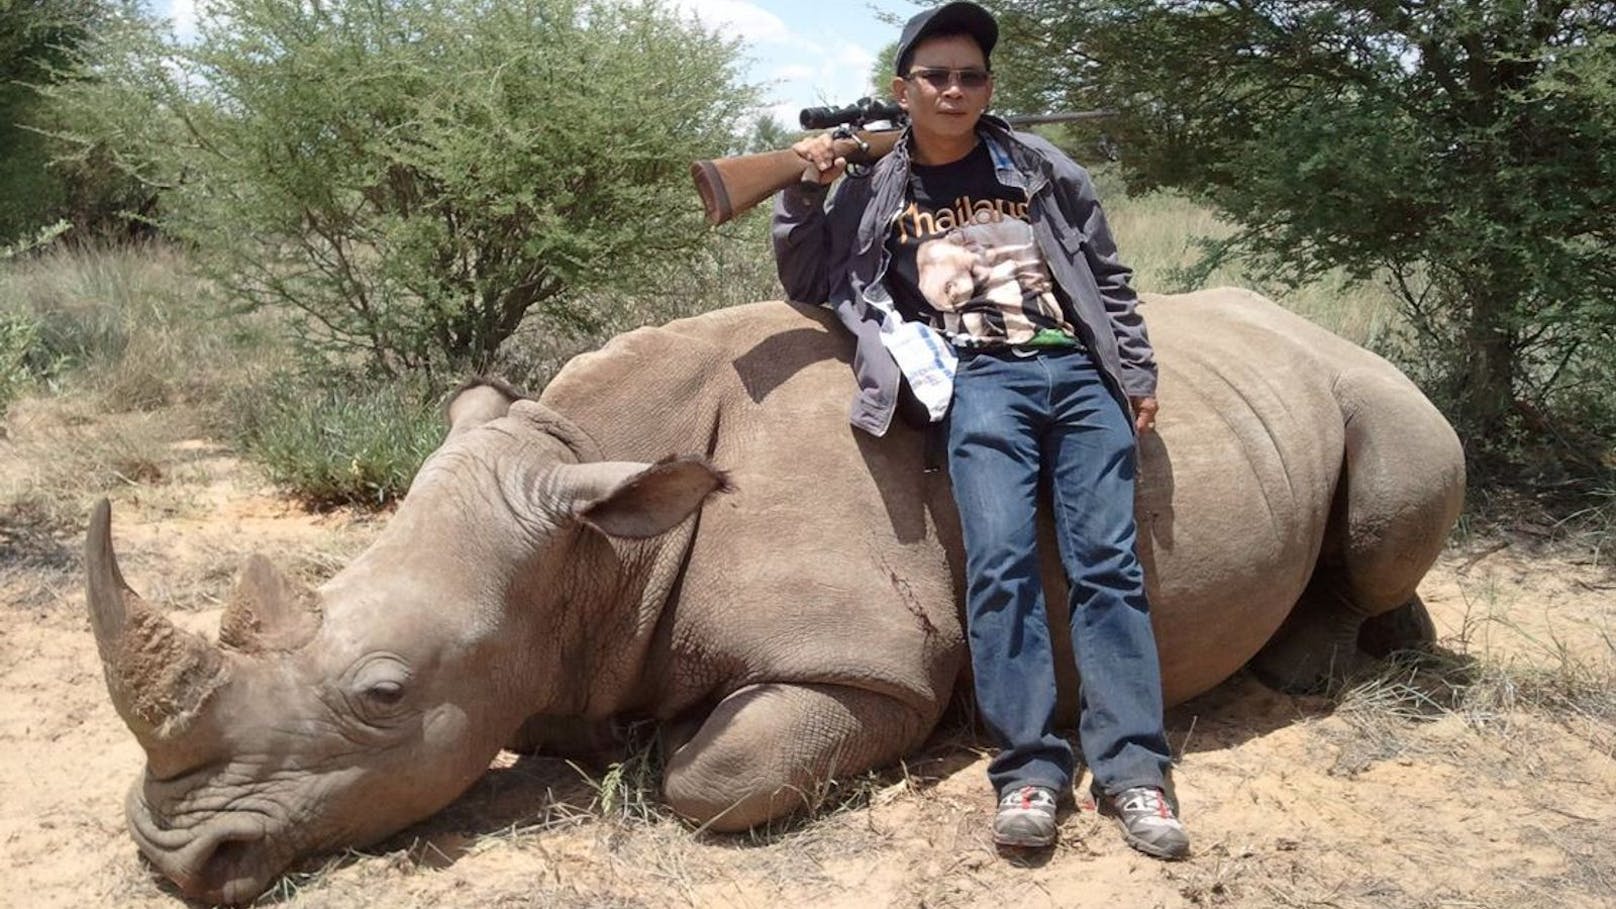 Chumlong Lemtongthai erlegte Wildtiere in Südafrika und verbüßt dort eine lange Haftstrafe.